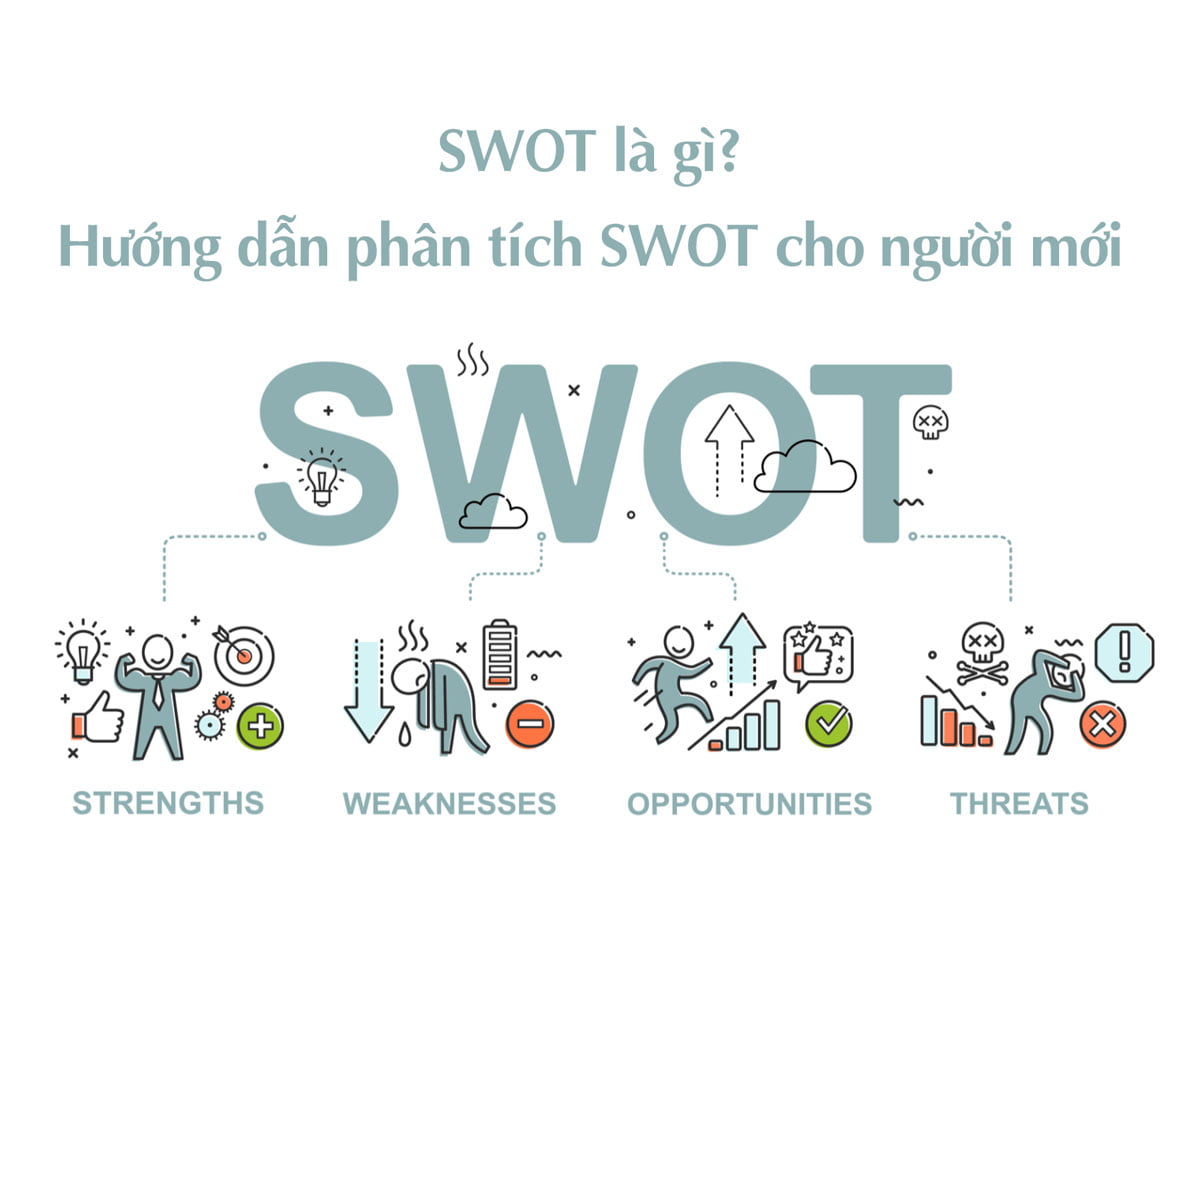 SWOT là gì? Hướng dẫn phân tích SWOT cho người mới